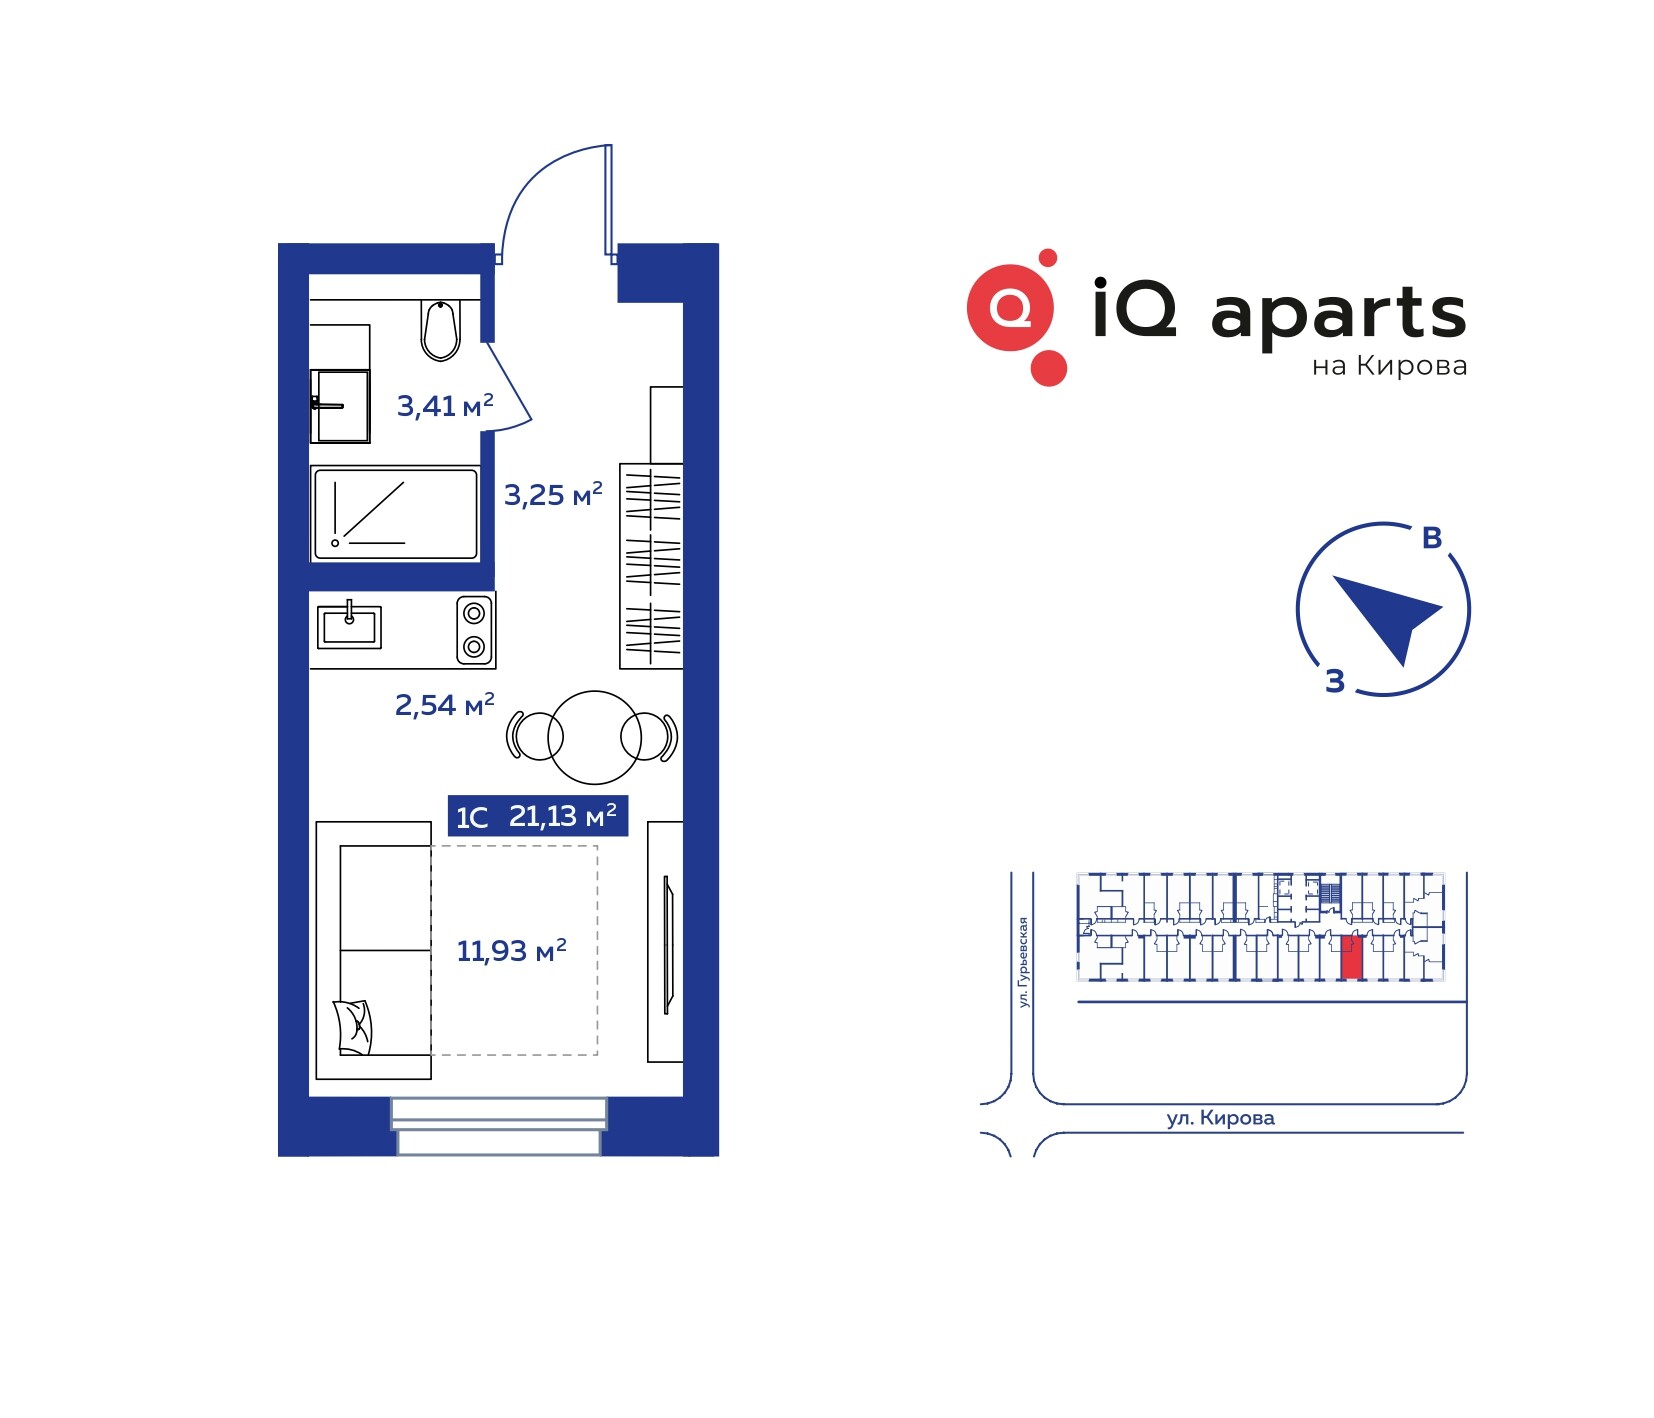 1-комнатная квартира 20.2м2 ЖК IQ Aparts